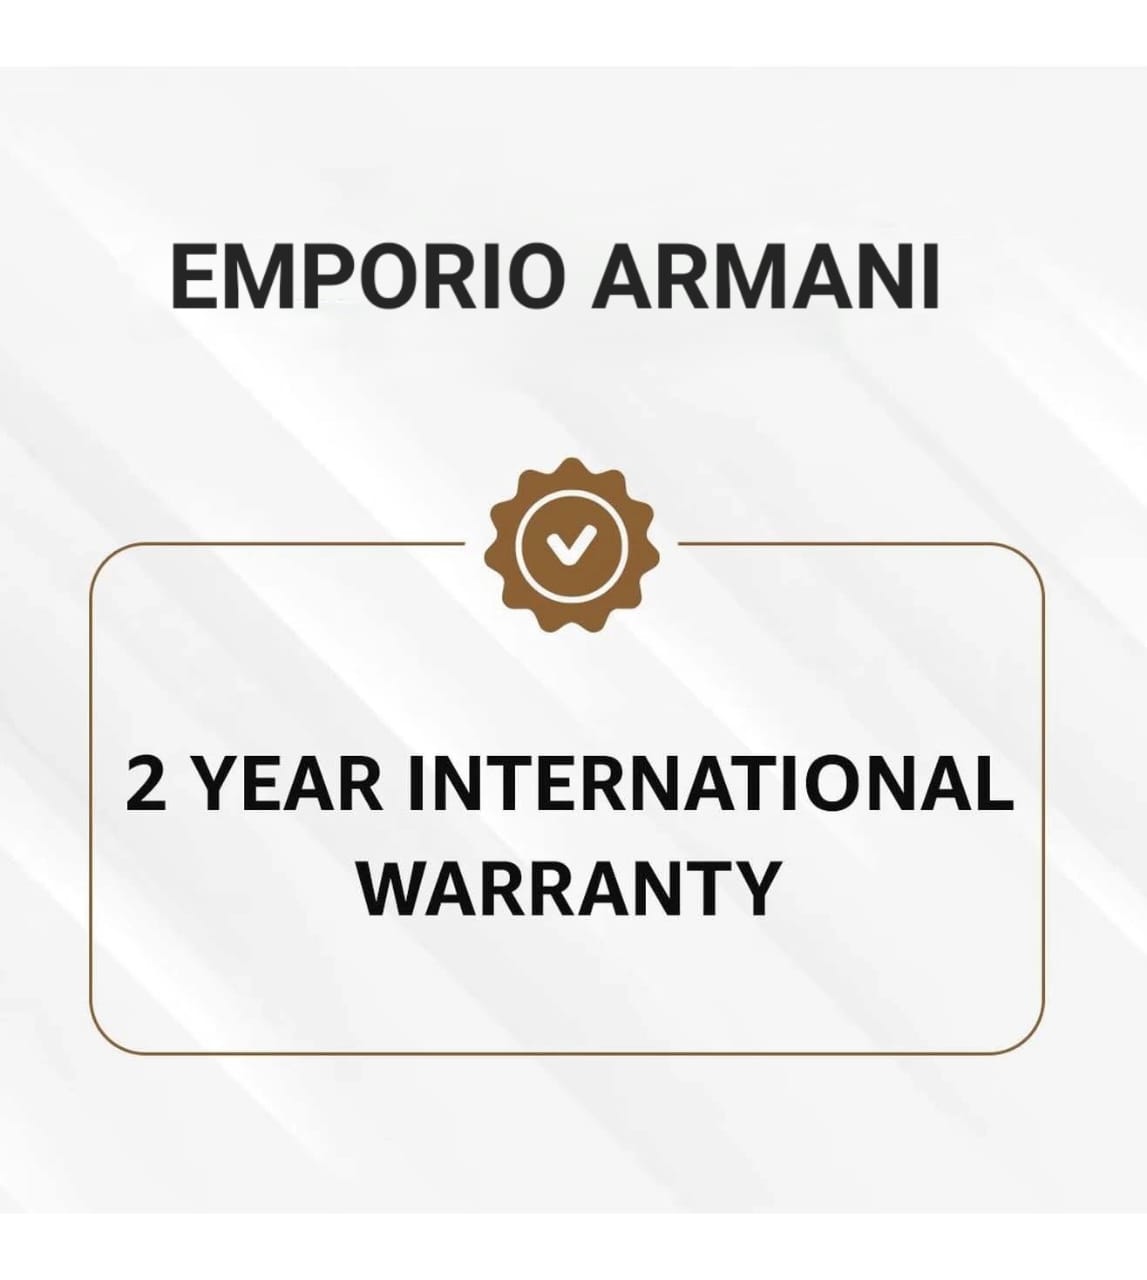 AR70002 | EMPORIO ARMANI Mario Black Dial Watch for Men